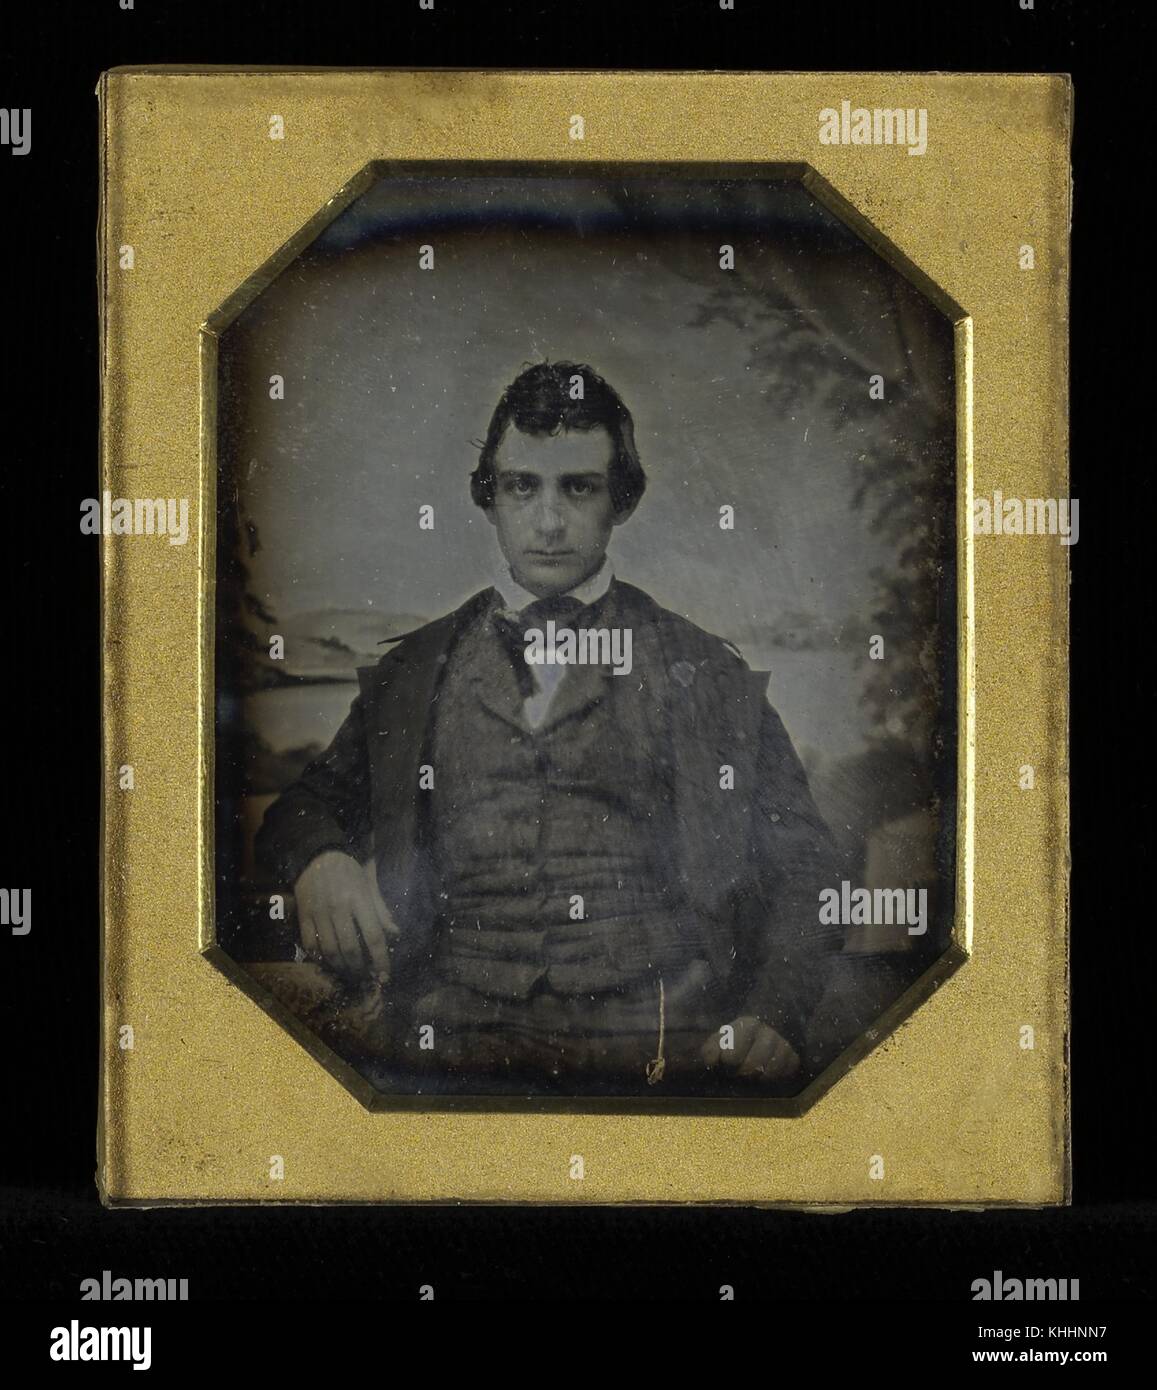 Gerahmte octagon daguerreotypie von Edwin Booth, berühmte Schauspieler aus dem 19. Jahrhundert, der Bruder von John Wilkes Booth, der Mann, der Präsident Abraham Lincoln ermordet, 1890. Von der New York Public Library. Stockfoto